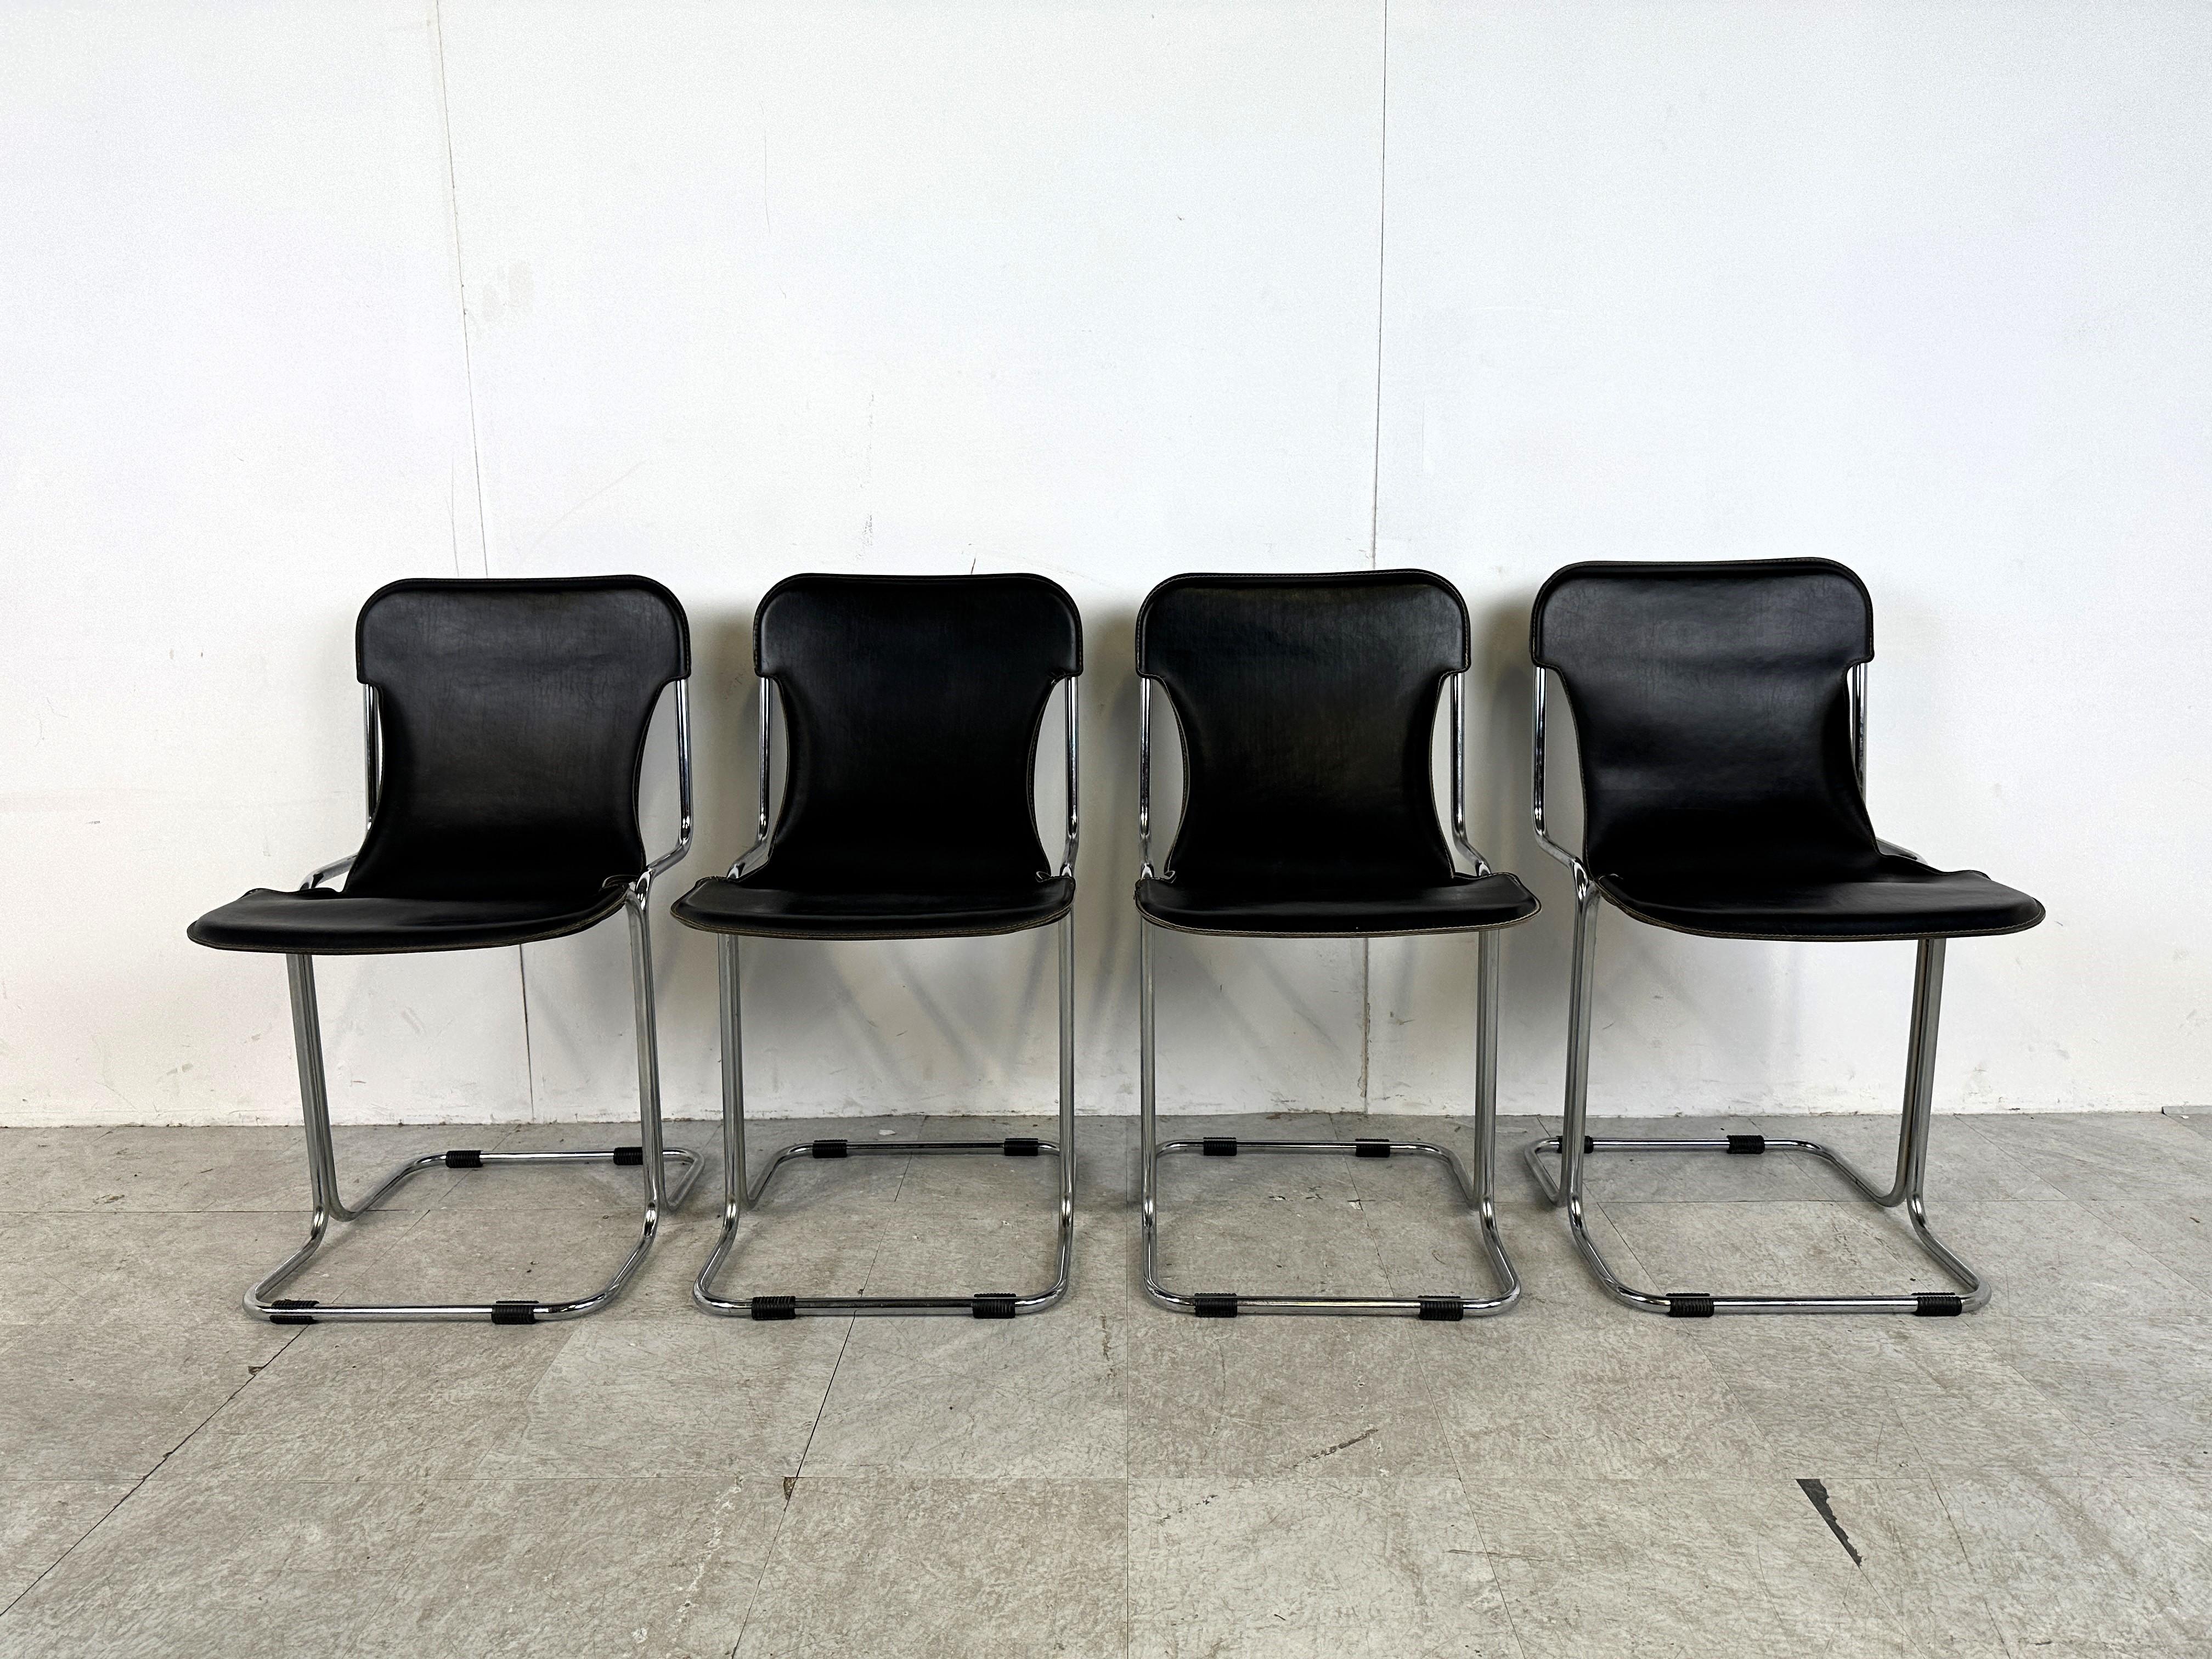 Chaises de salle à manger vintage en cuir et structure chromée, modèle Calla, conçues par Antonio Ari Colombo pour Arflex.

Bon état.

Années 1970 - Italie

Dimensions :
Hauteur : 83cm/32.67